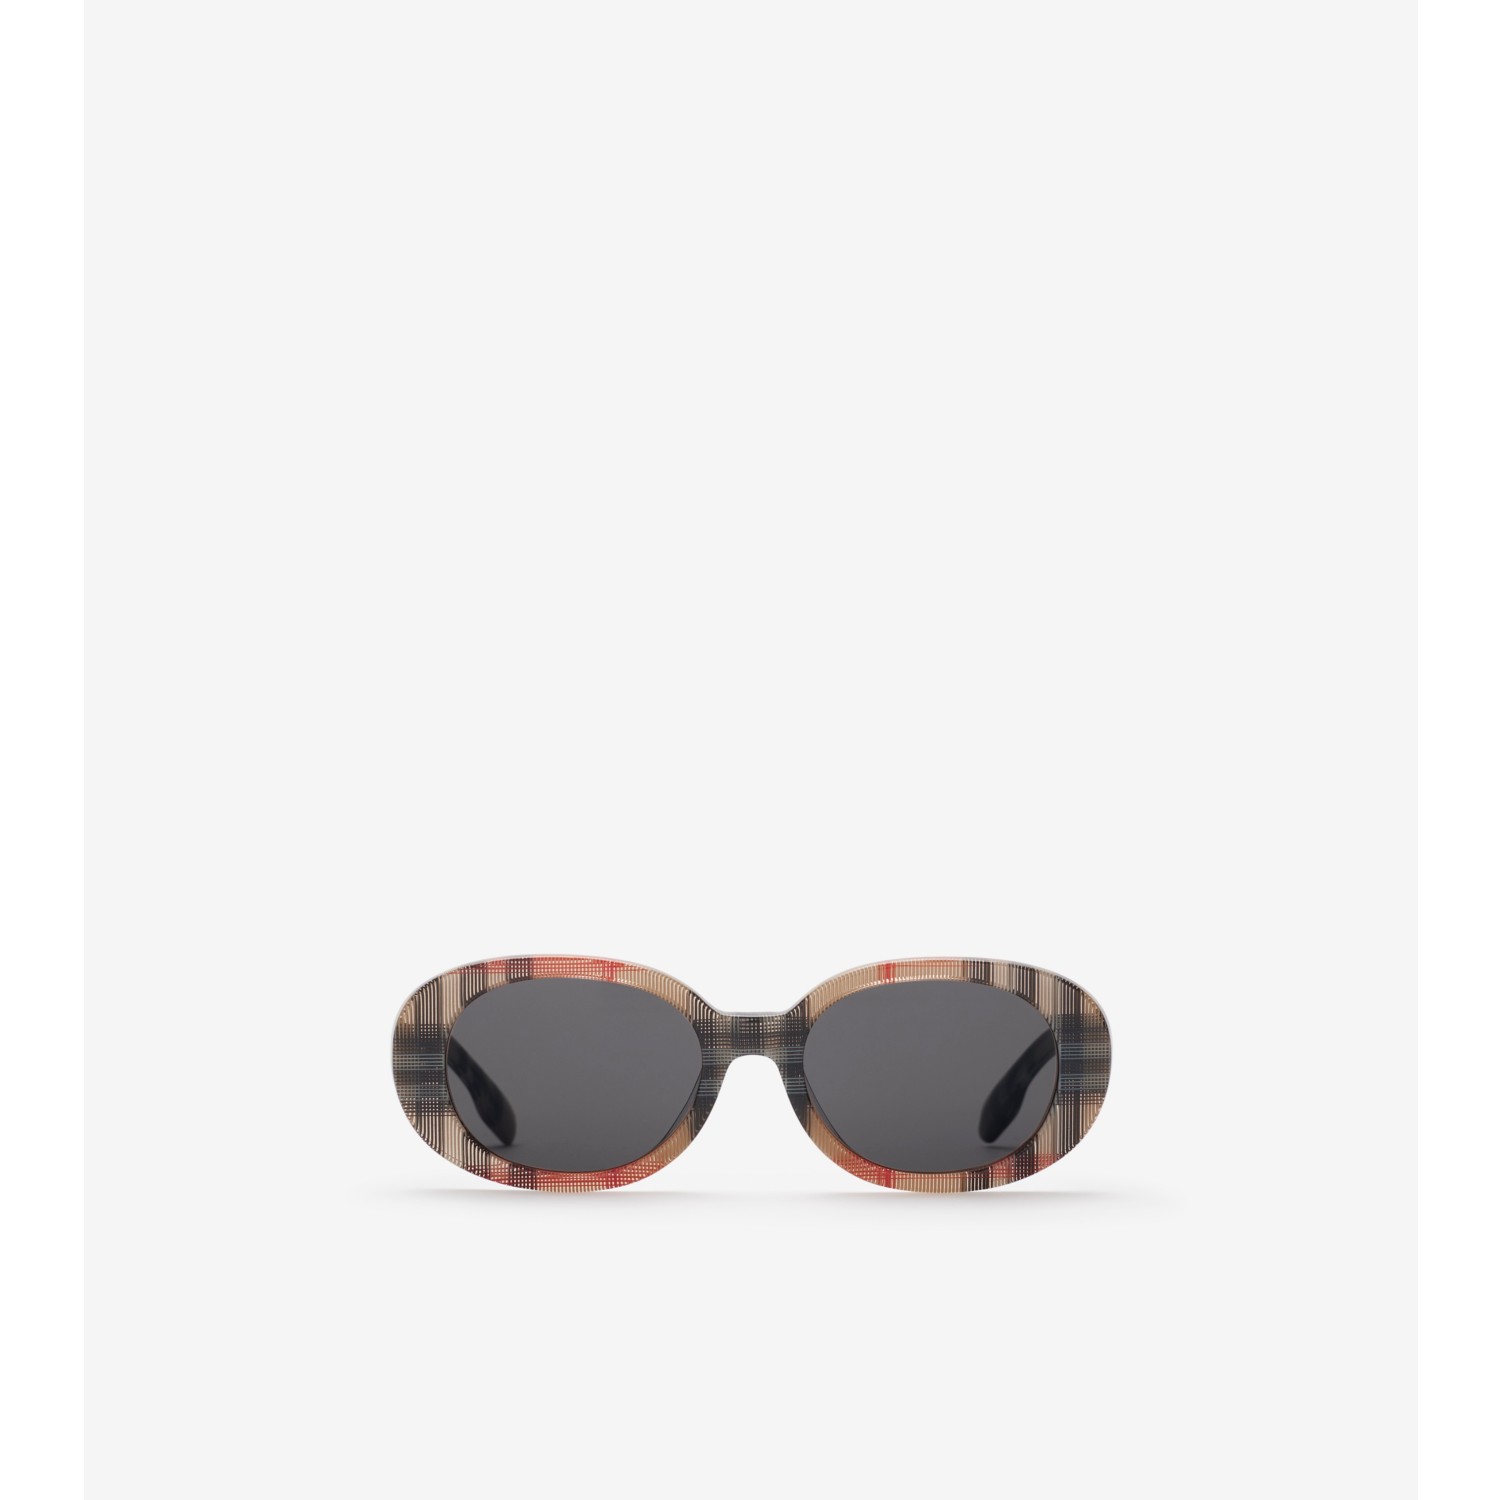 Sonnenbrille mit ovaler Fassung in Check